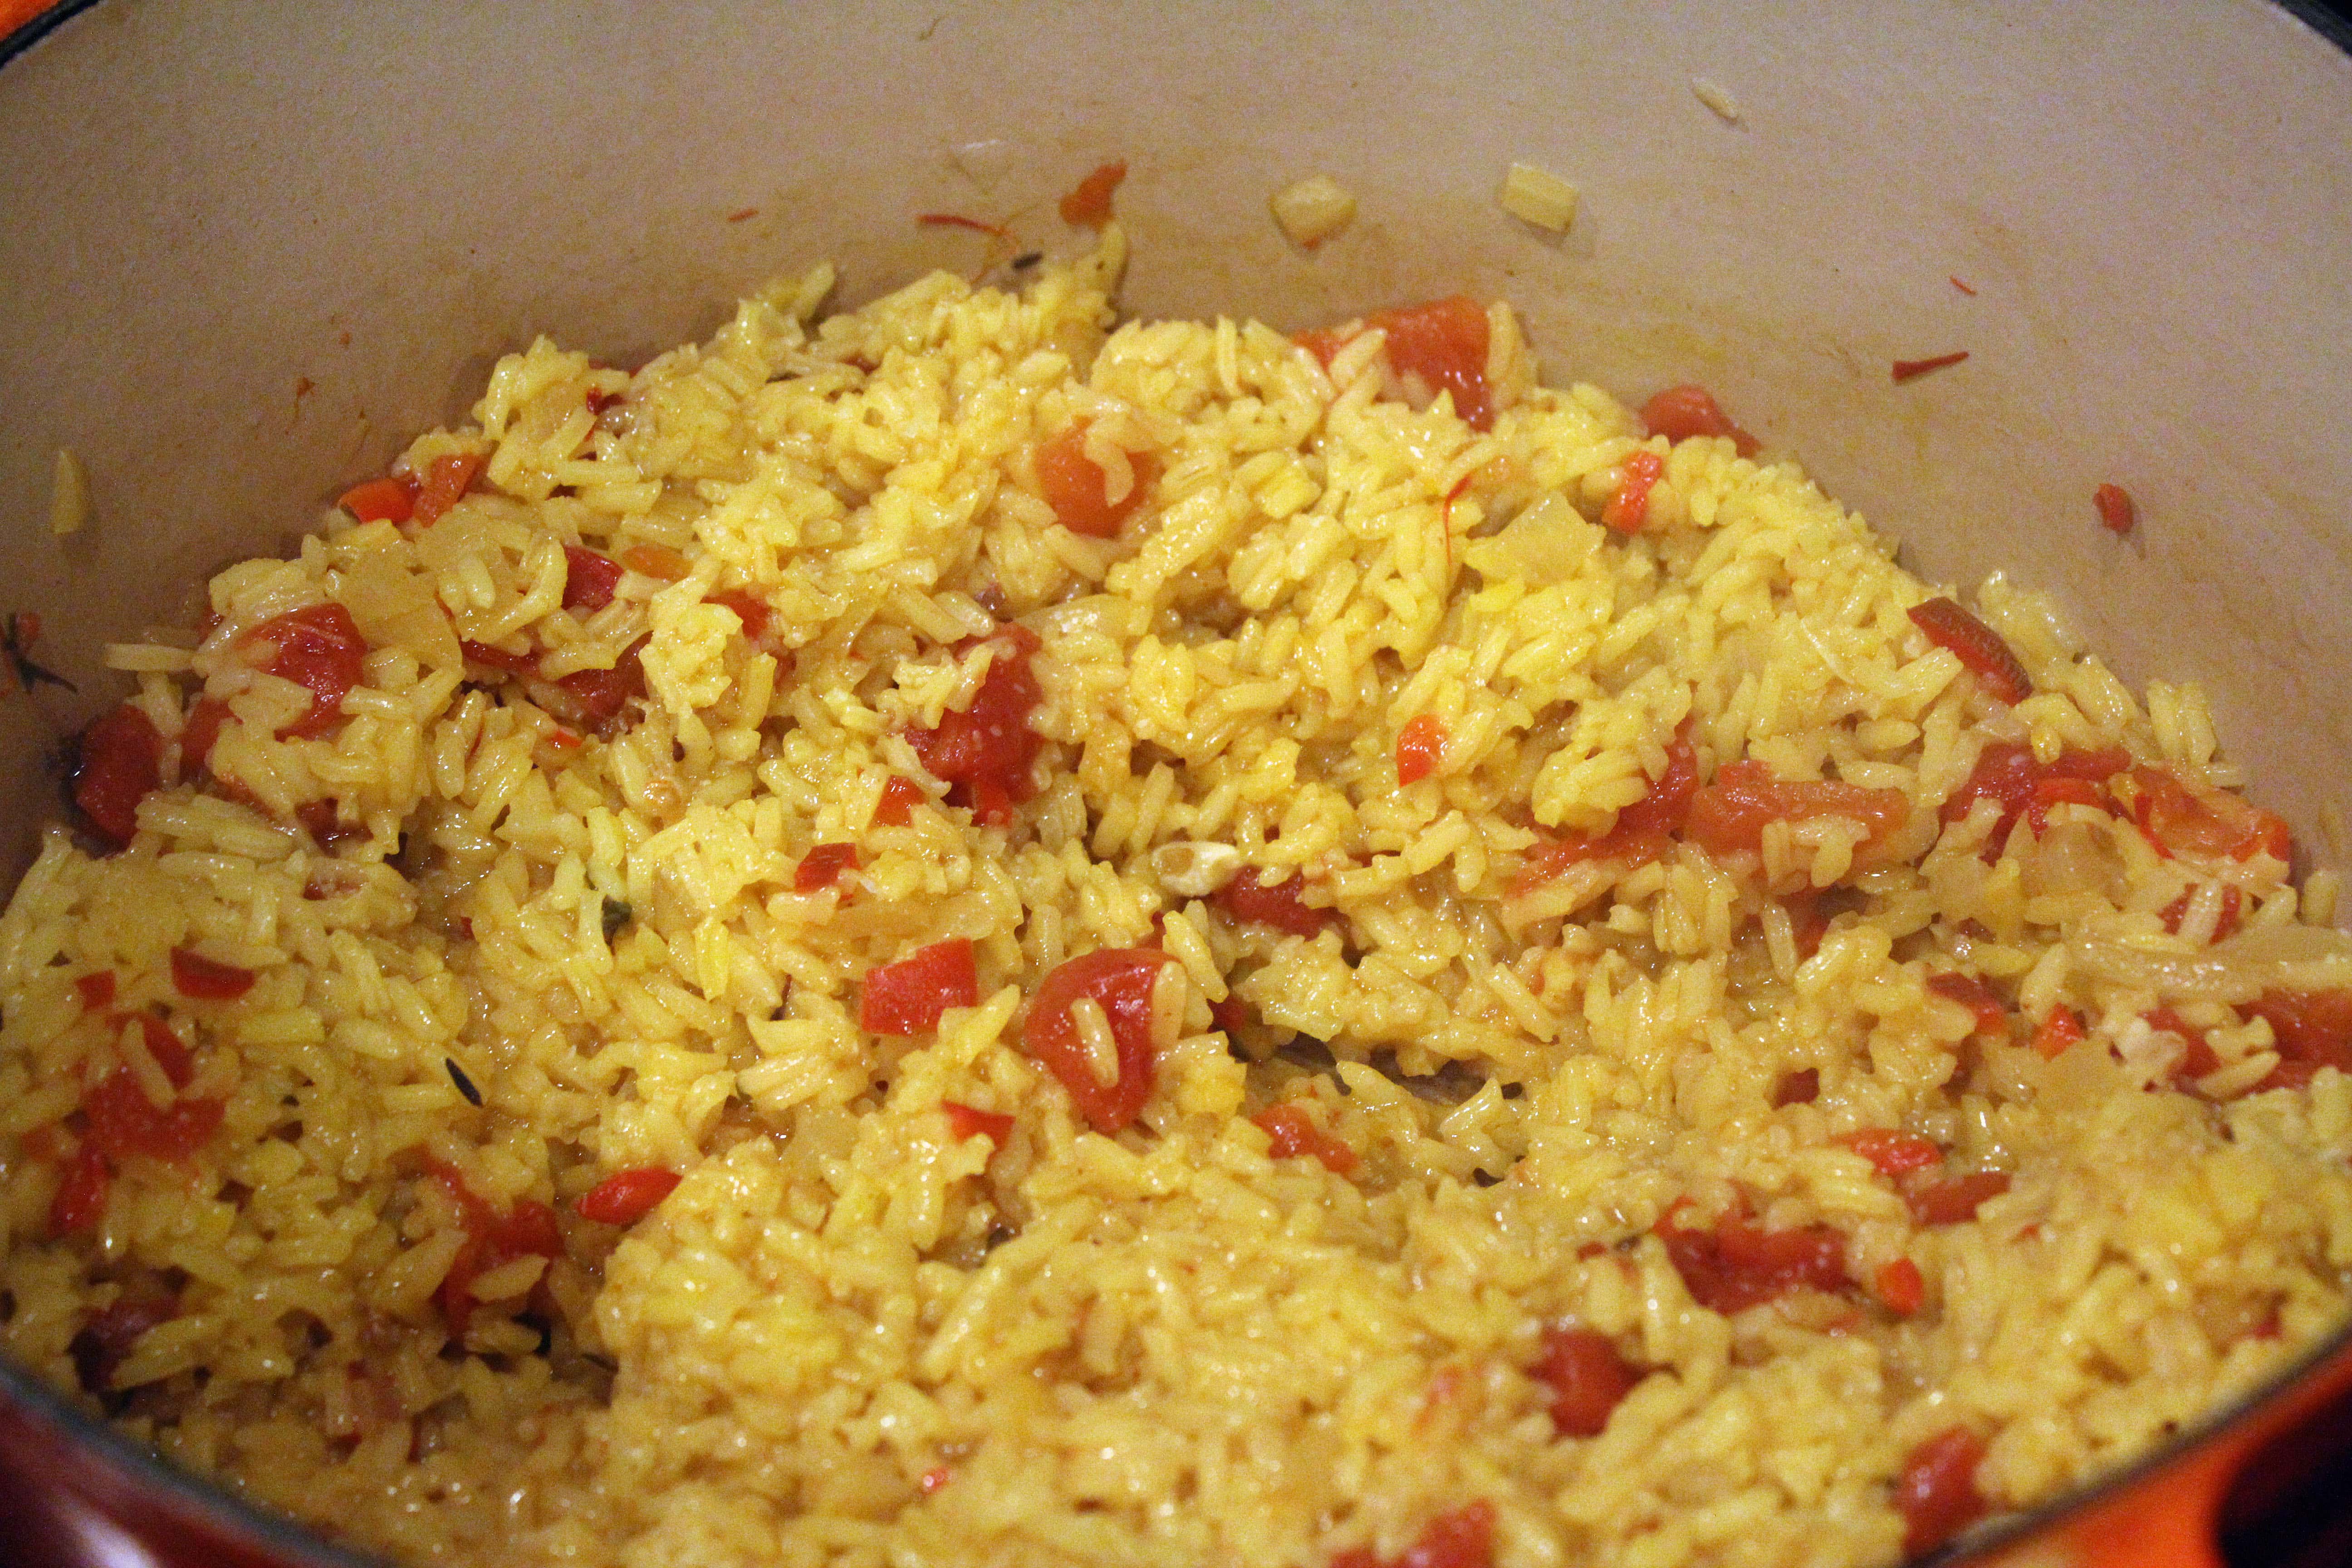 Partially cook rice